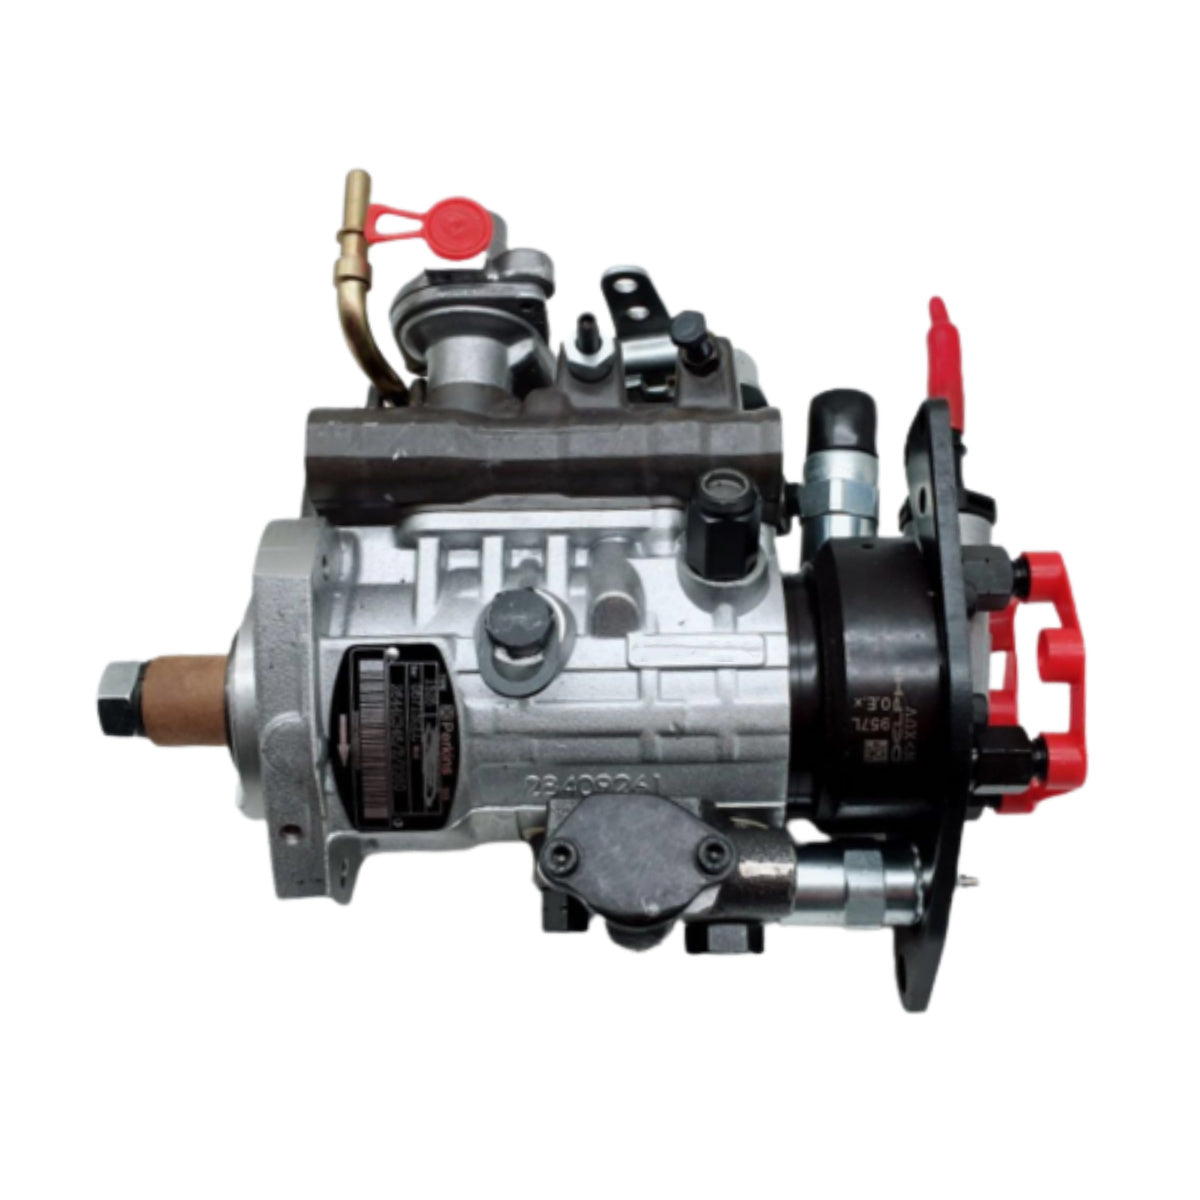 Bomba de injeção de combustível 9320A390G 2644H029 para Delphi Dp310 Perkins Engine Vista 4T 1104C-44T